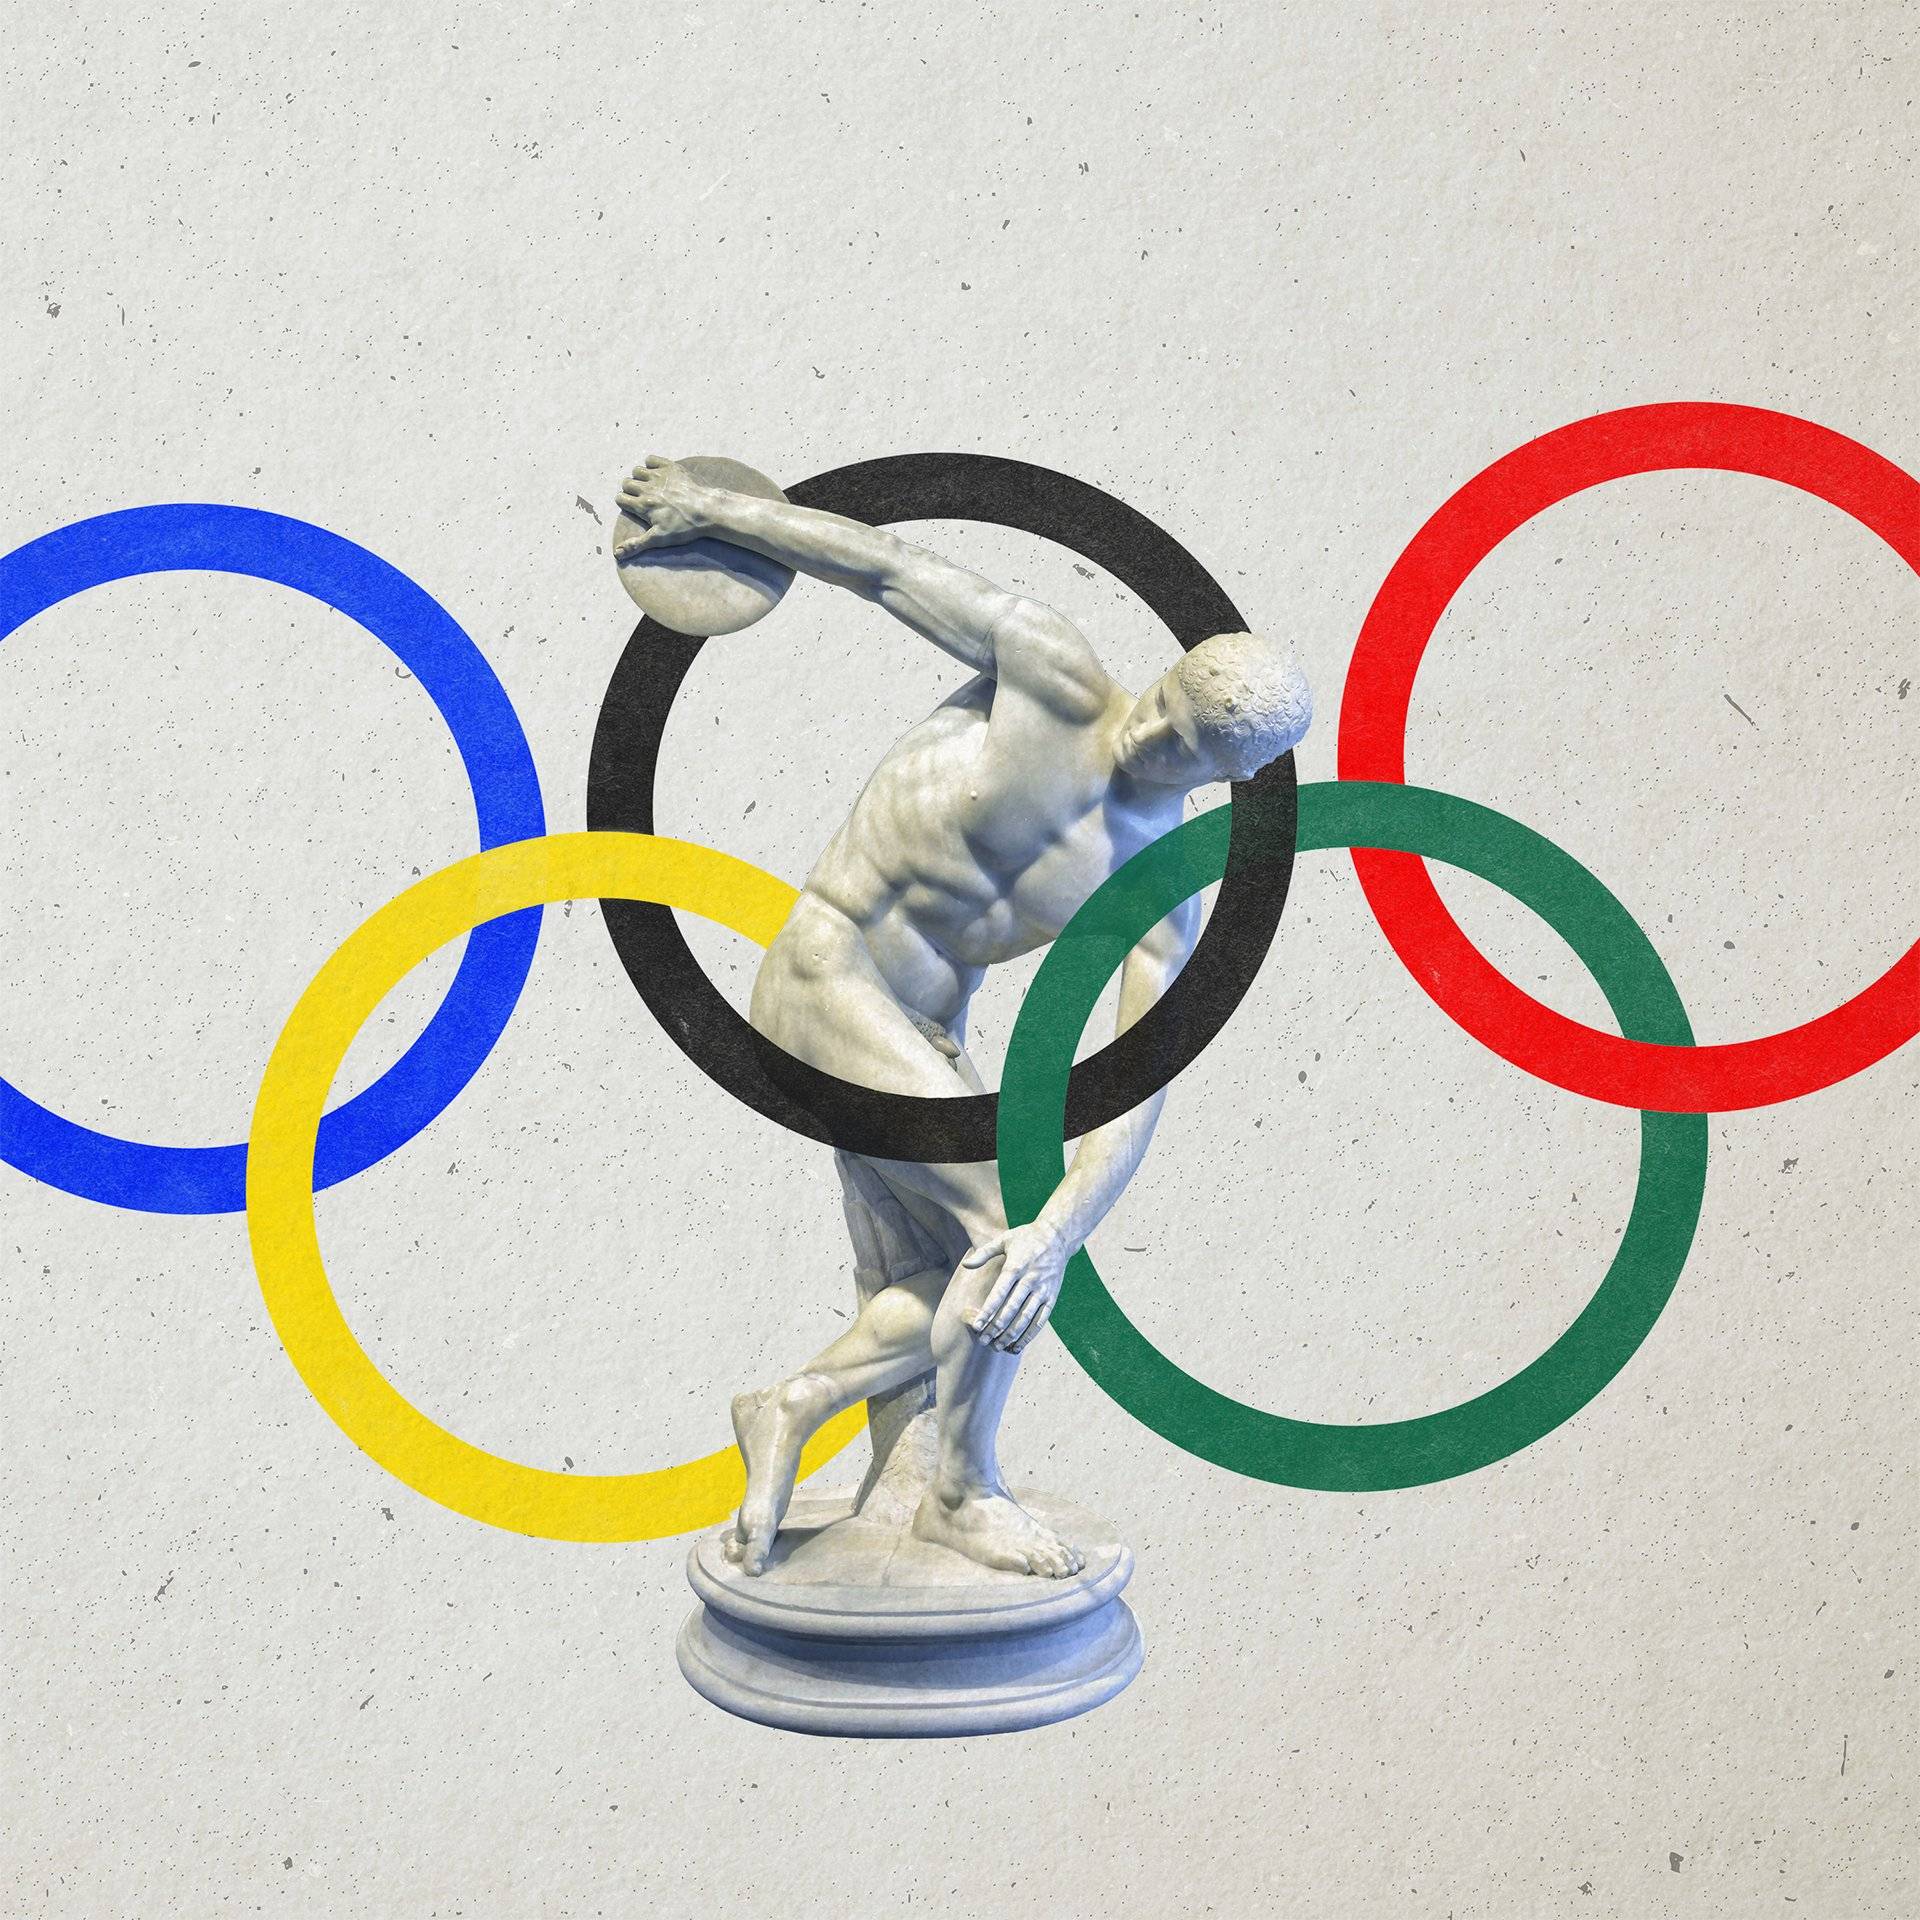 Rysunek pięciu kolorowych kół olimpijskich z figurką dyskobola w środku